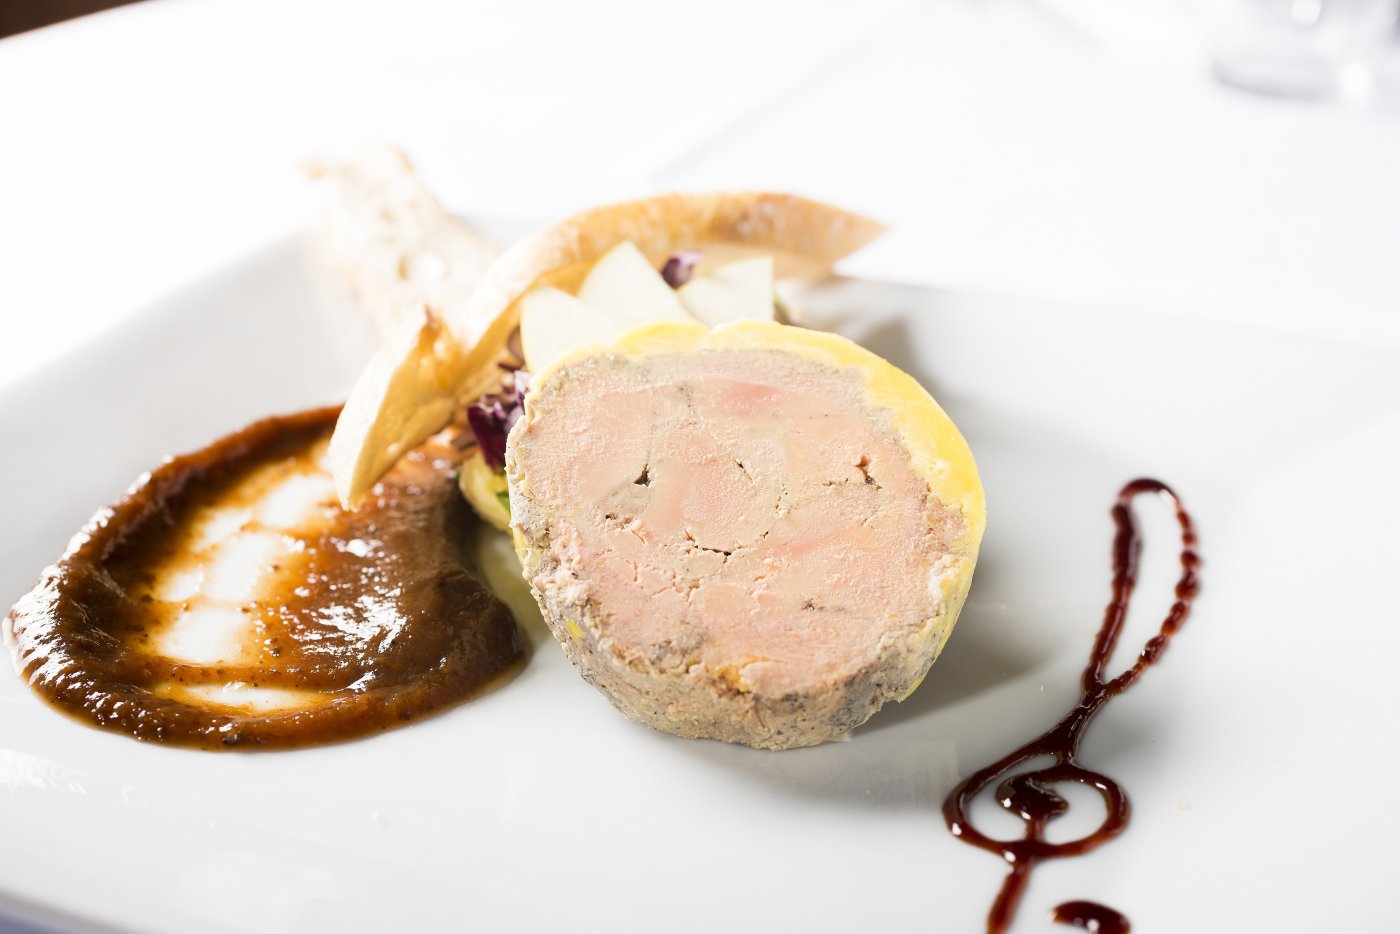 ferme-saint-michel-foie-gras-specialite-culinaire-francaise-est-un-met-de-choix-entree-aperitif